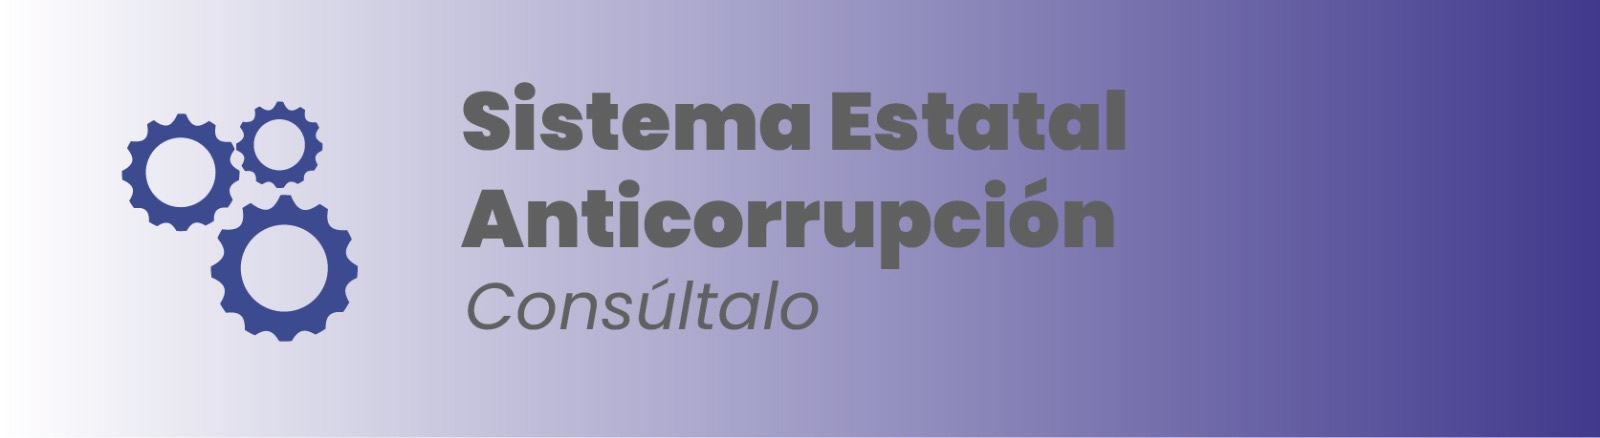 Imagen que te permite consultar información referente al sistema estatal anticorrupción